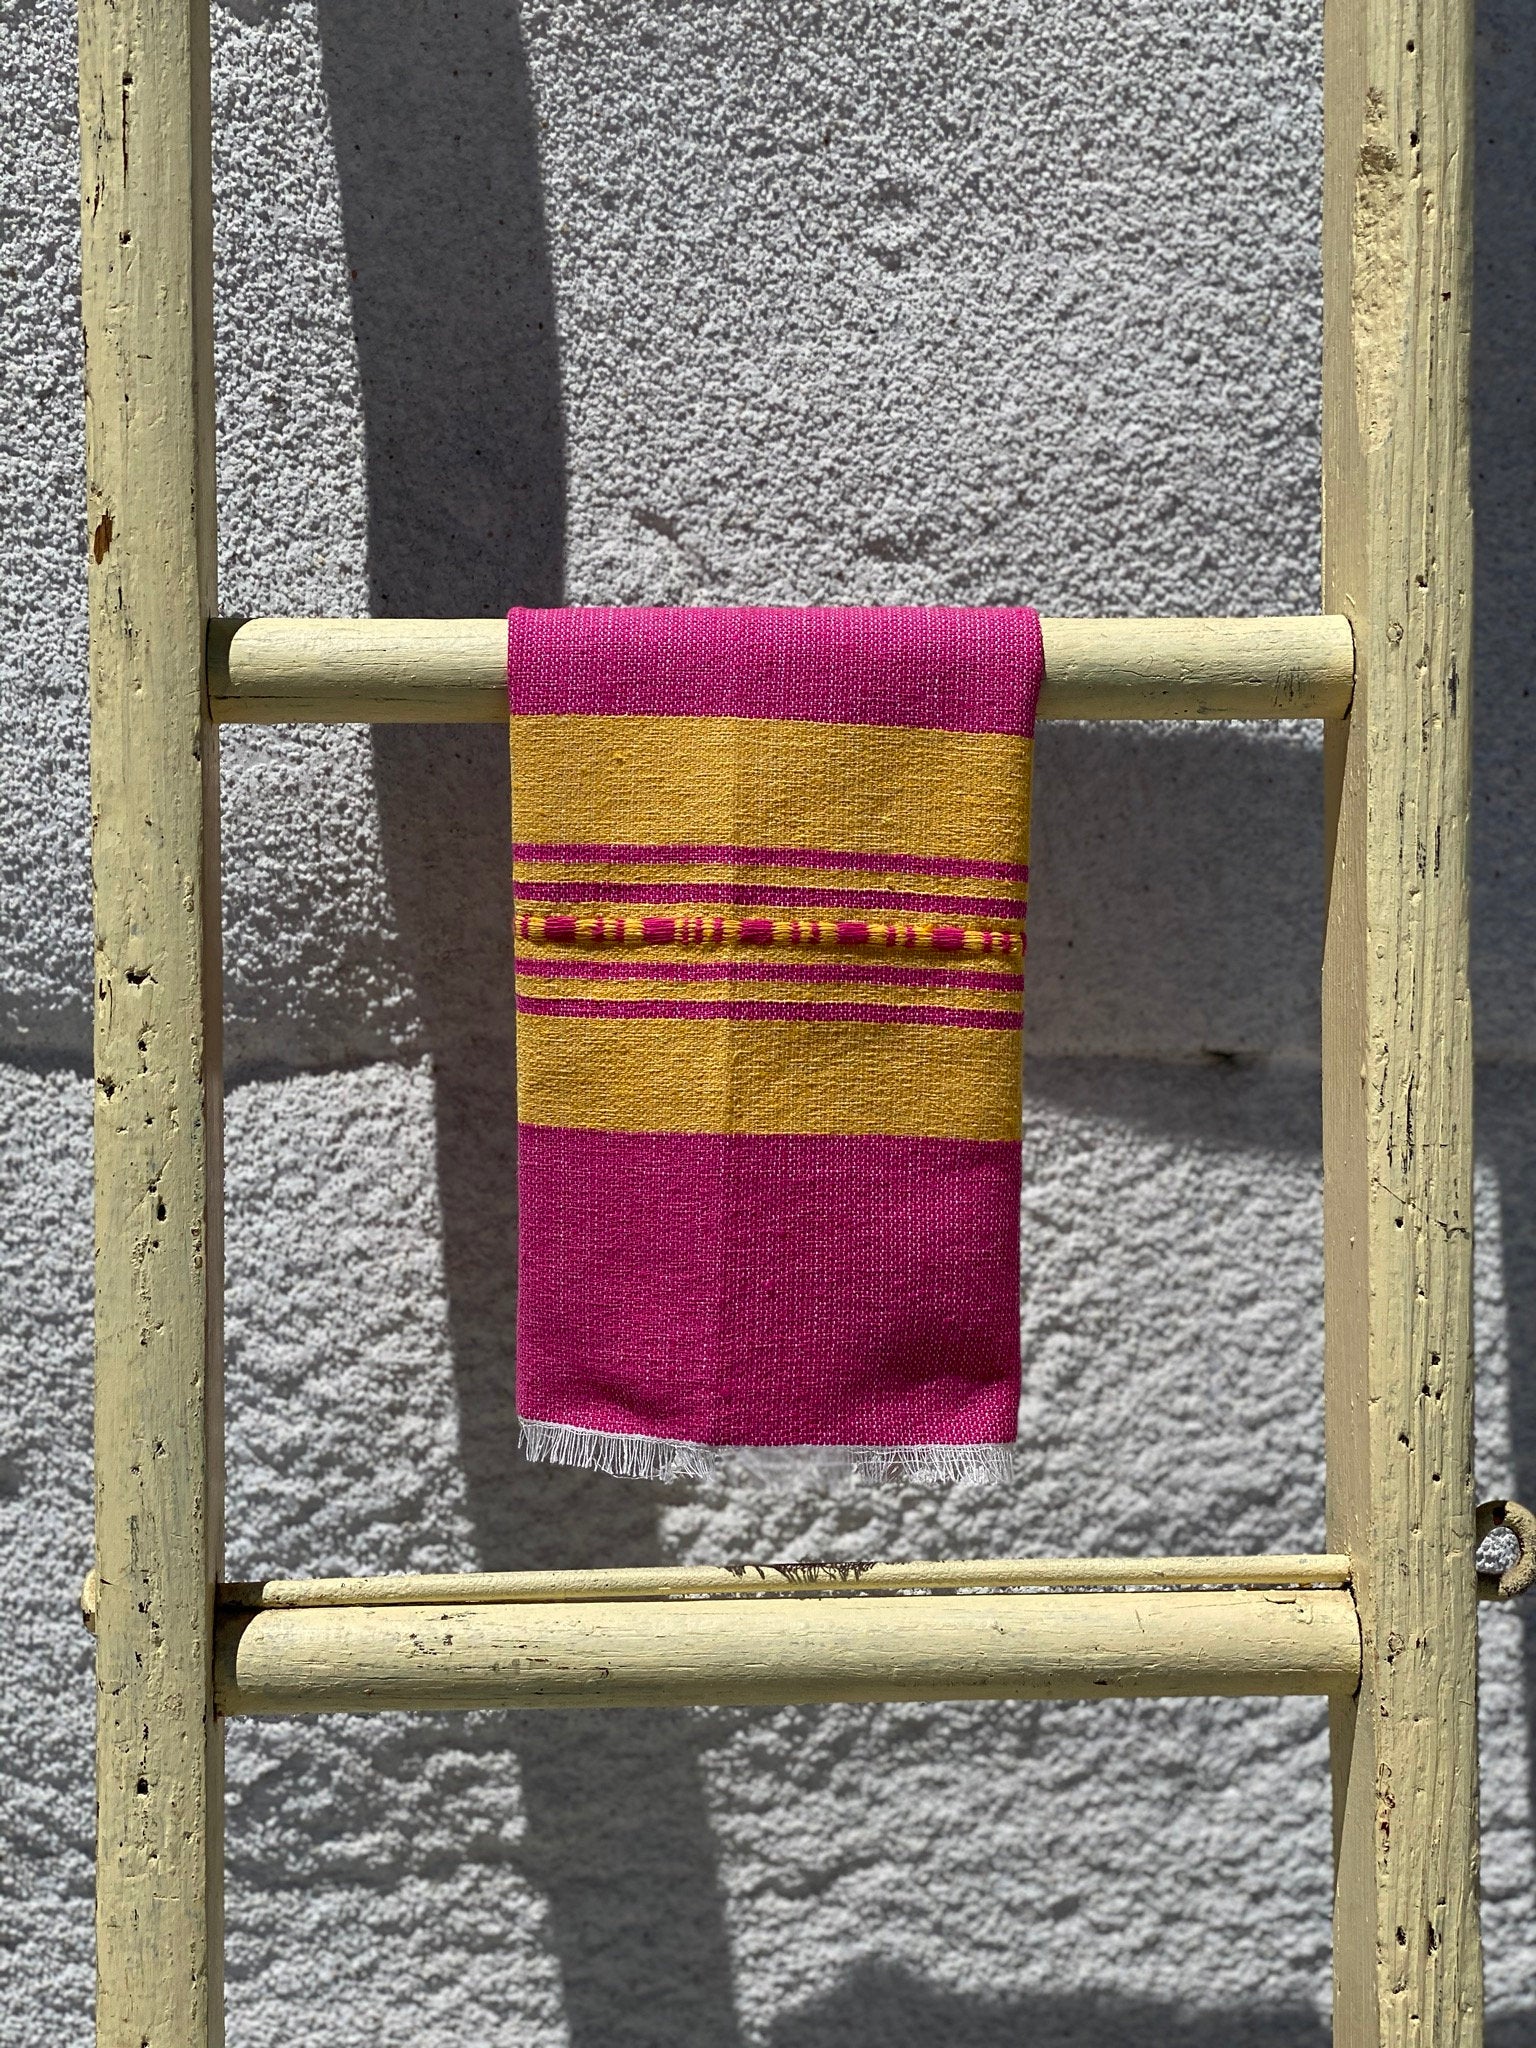 Valle Striped Cotton Hand Towel - Rosita Pink + Maiz Yellow